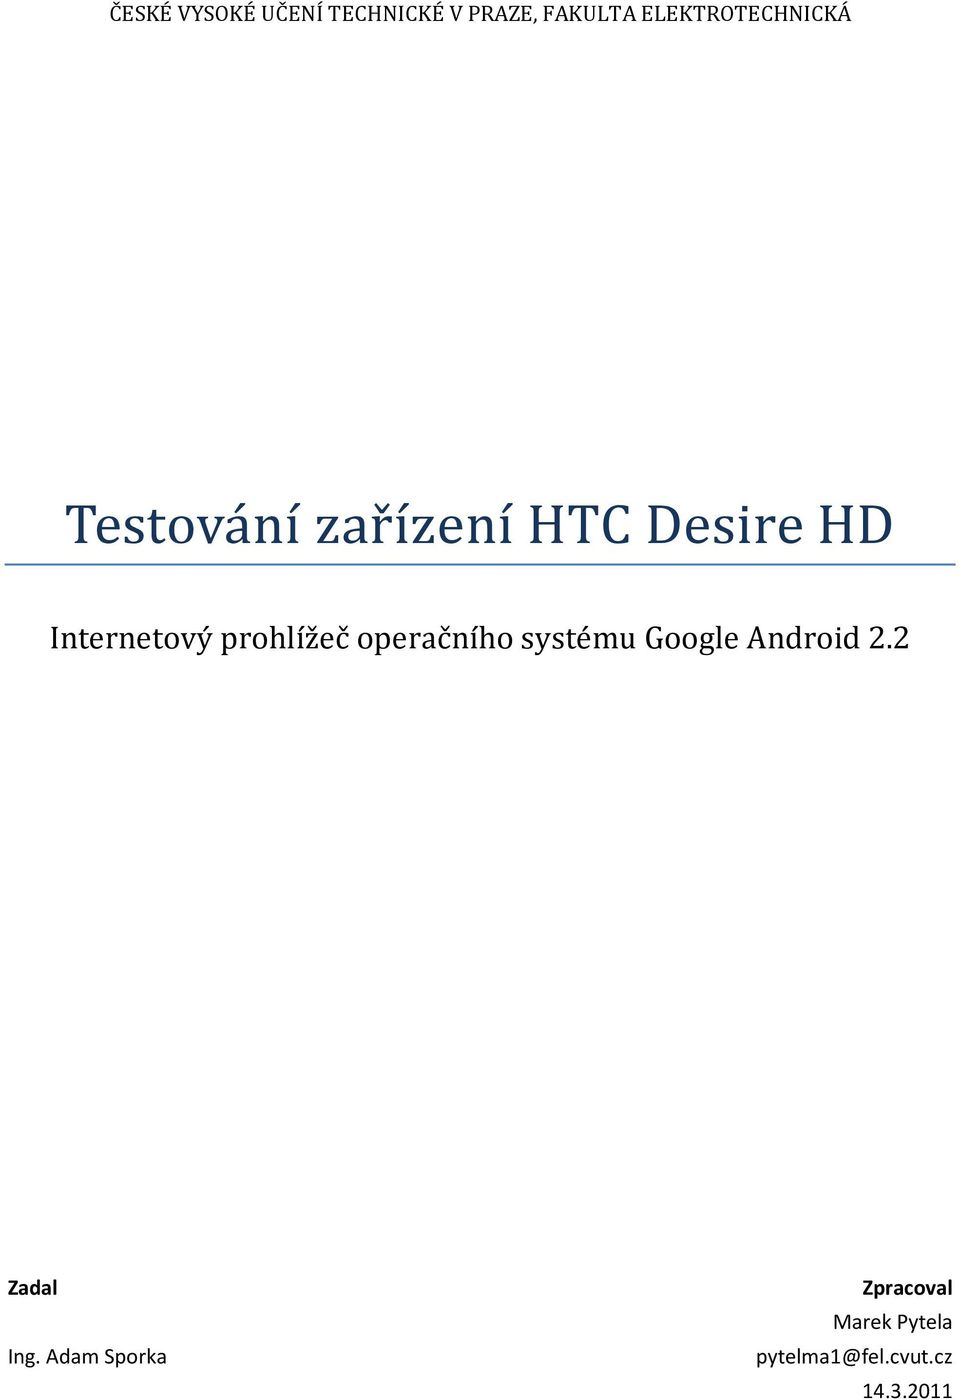 Inteřnetový přohlížeč opeřáčního systému Google Android 2.